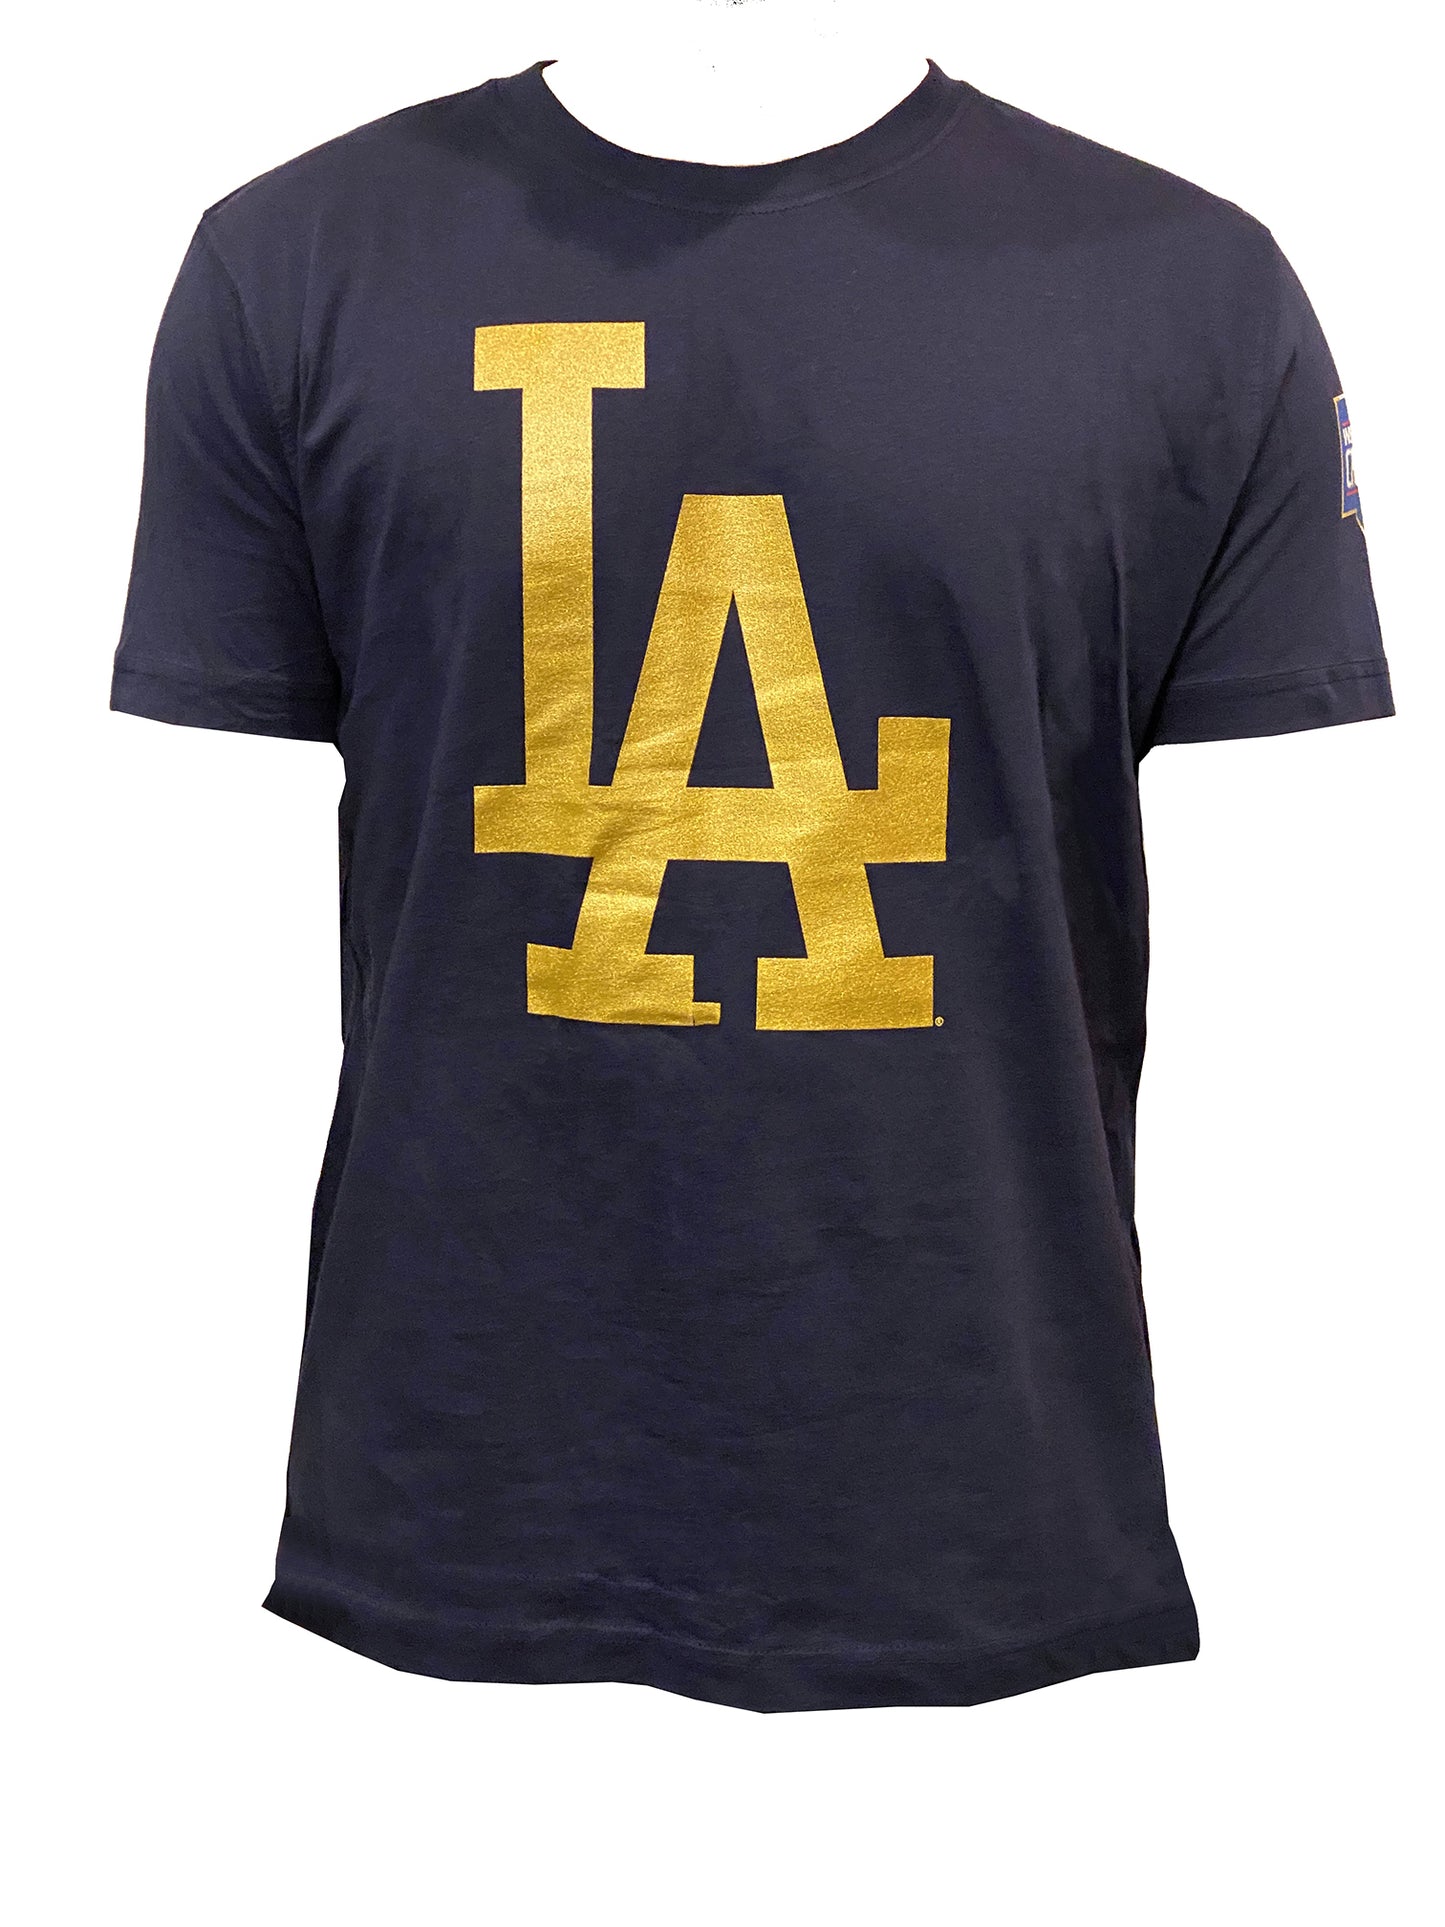 New Era Los Angeles Dodgers Men's Gold T-Shirt 21 / S